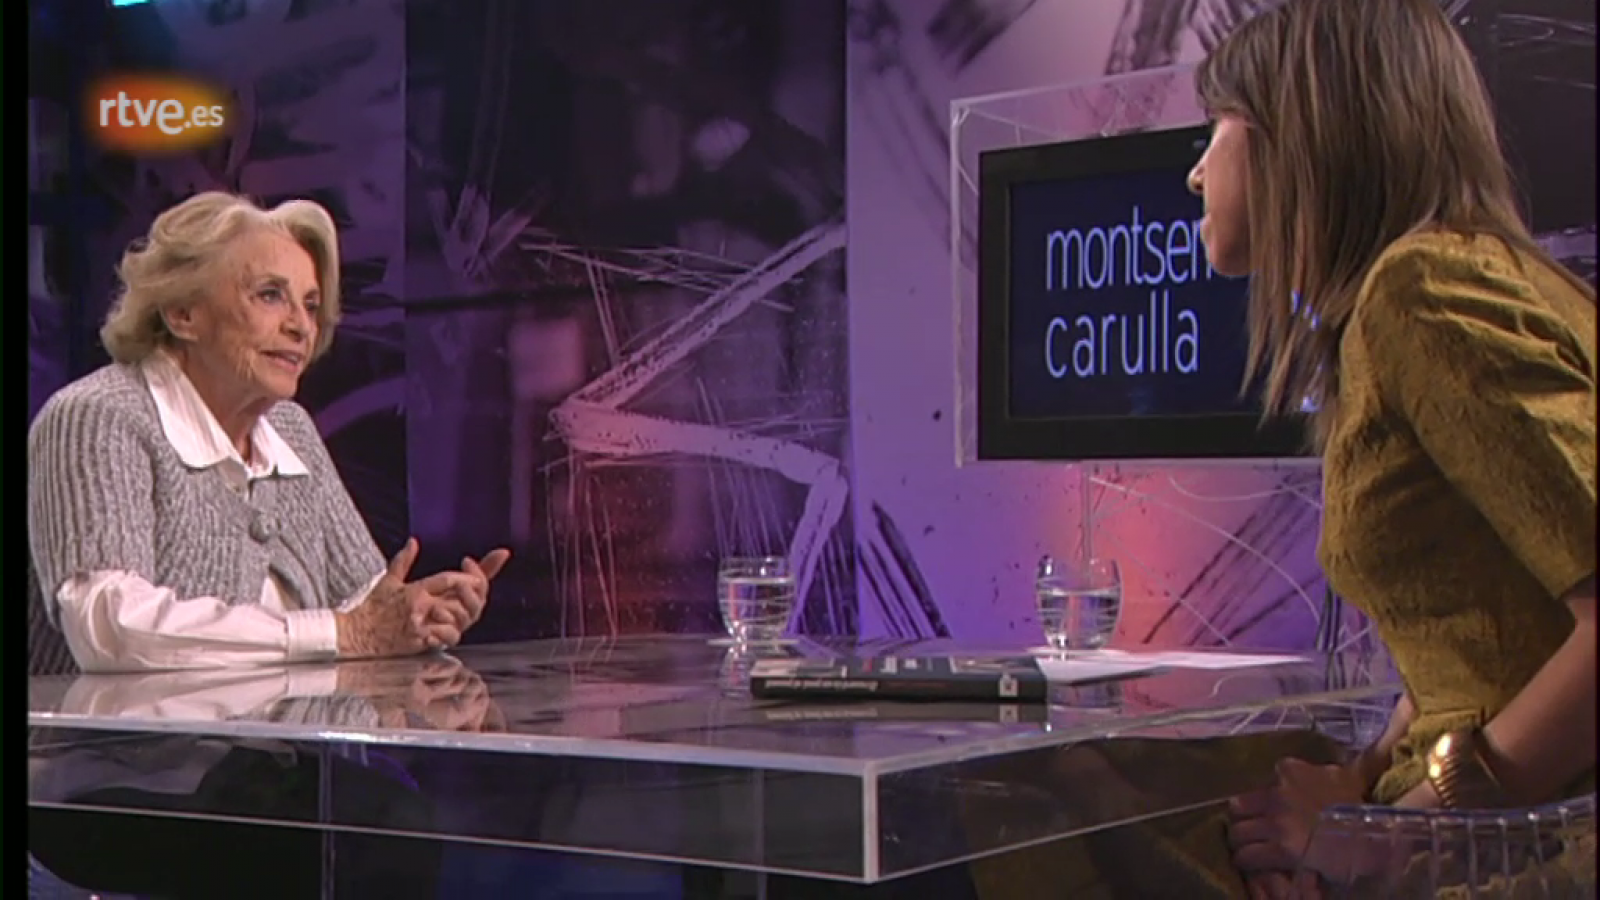  Gent de paraula - Montserrat Carrulla: "S'estima poc i es reconeix poc als artistes del nostre país"